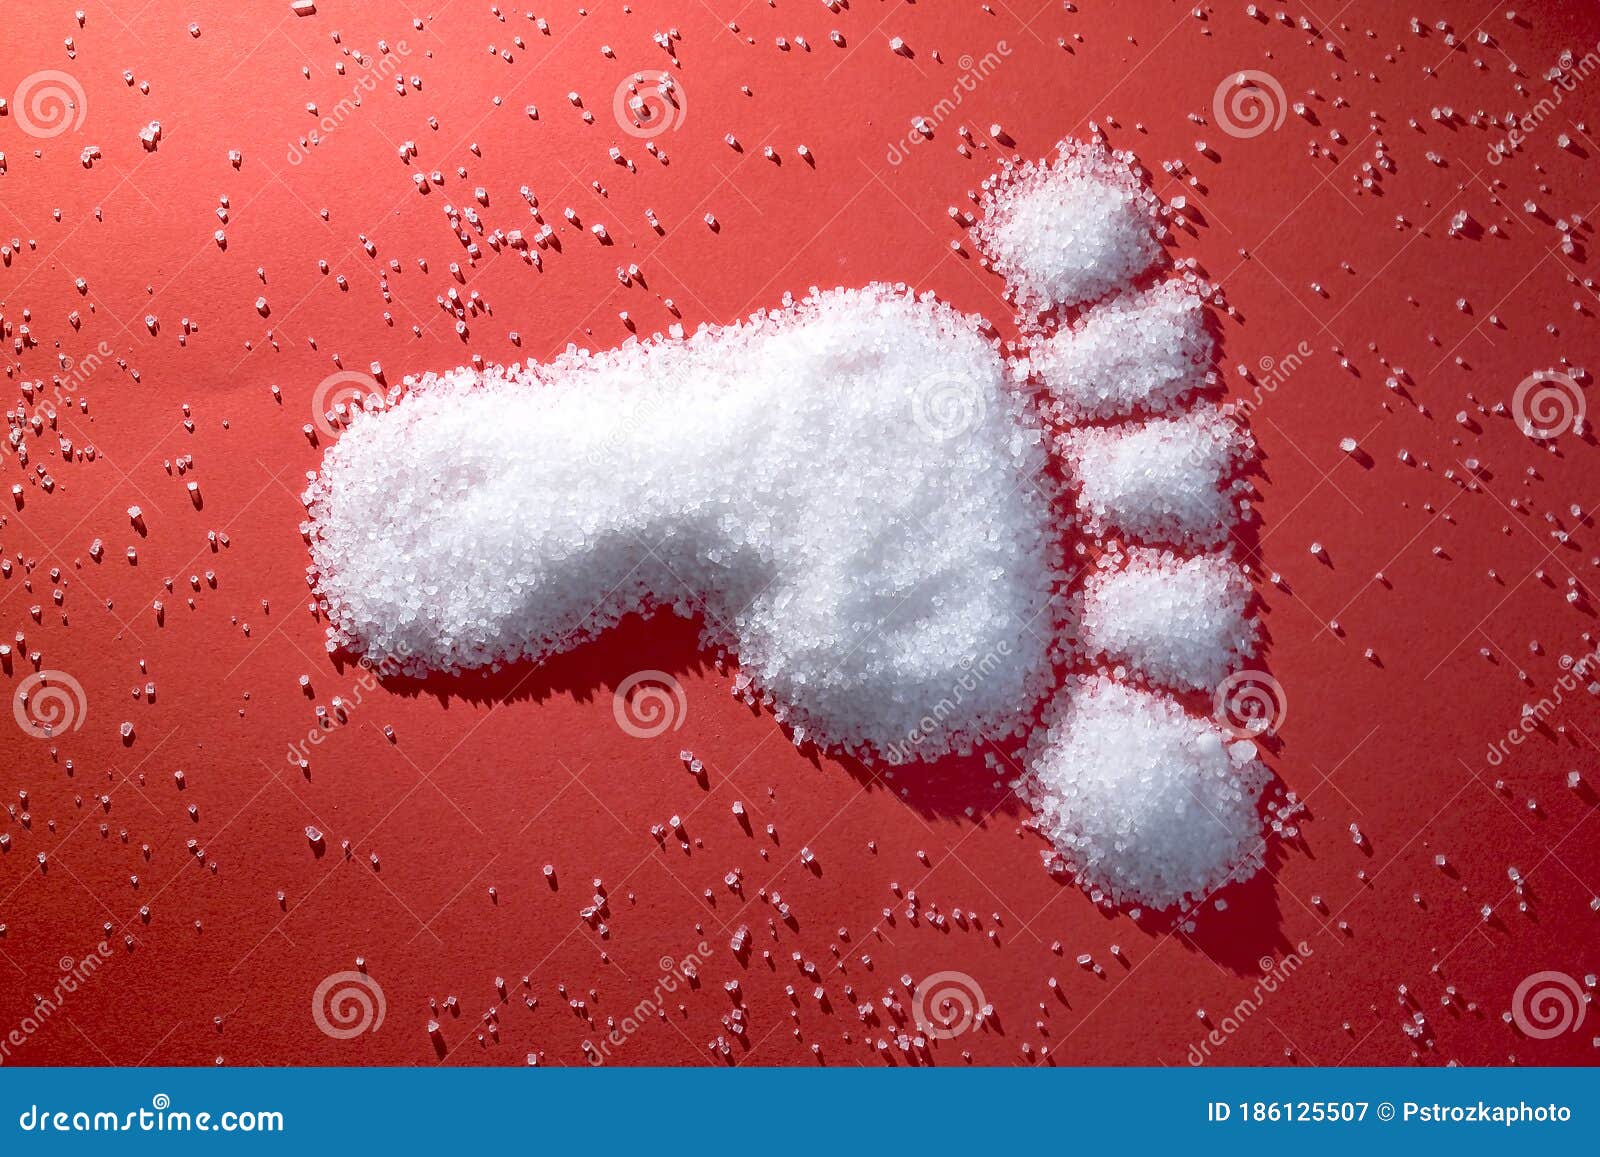 diabetic foot made of sugar